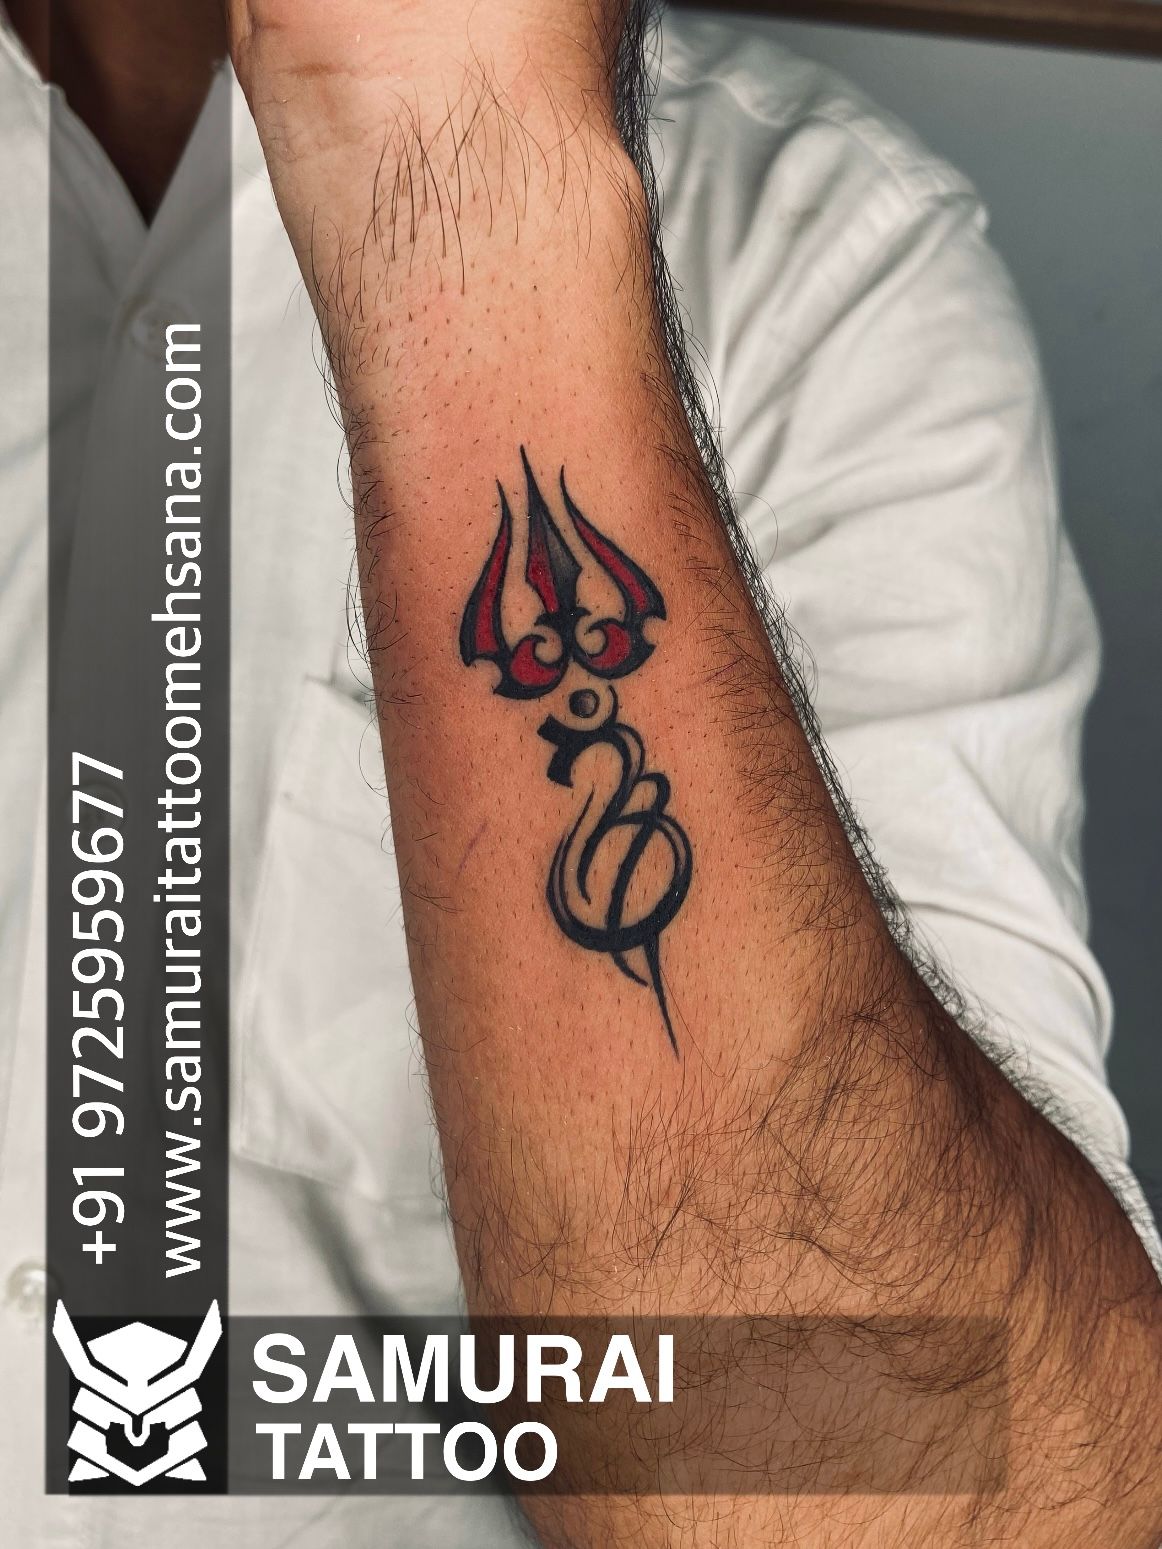 Tattoo uploaded by Vipul Chaudhary • Shiva tattoo |mahadev tattoo |Trishul  tattoo |Lord shiva tattoo • Tattoodo